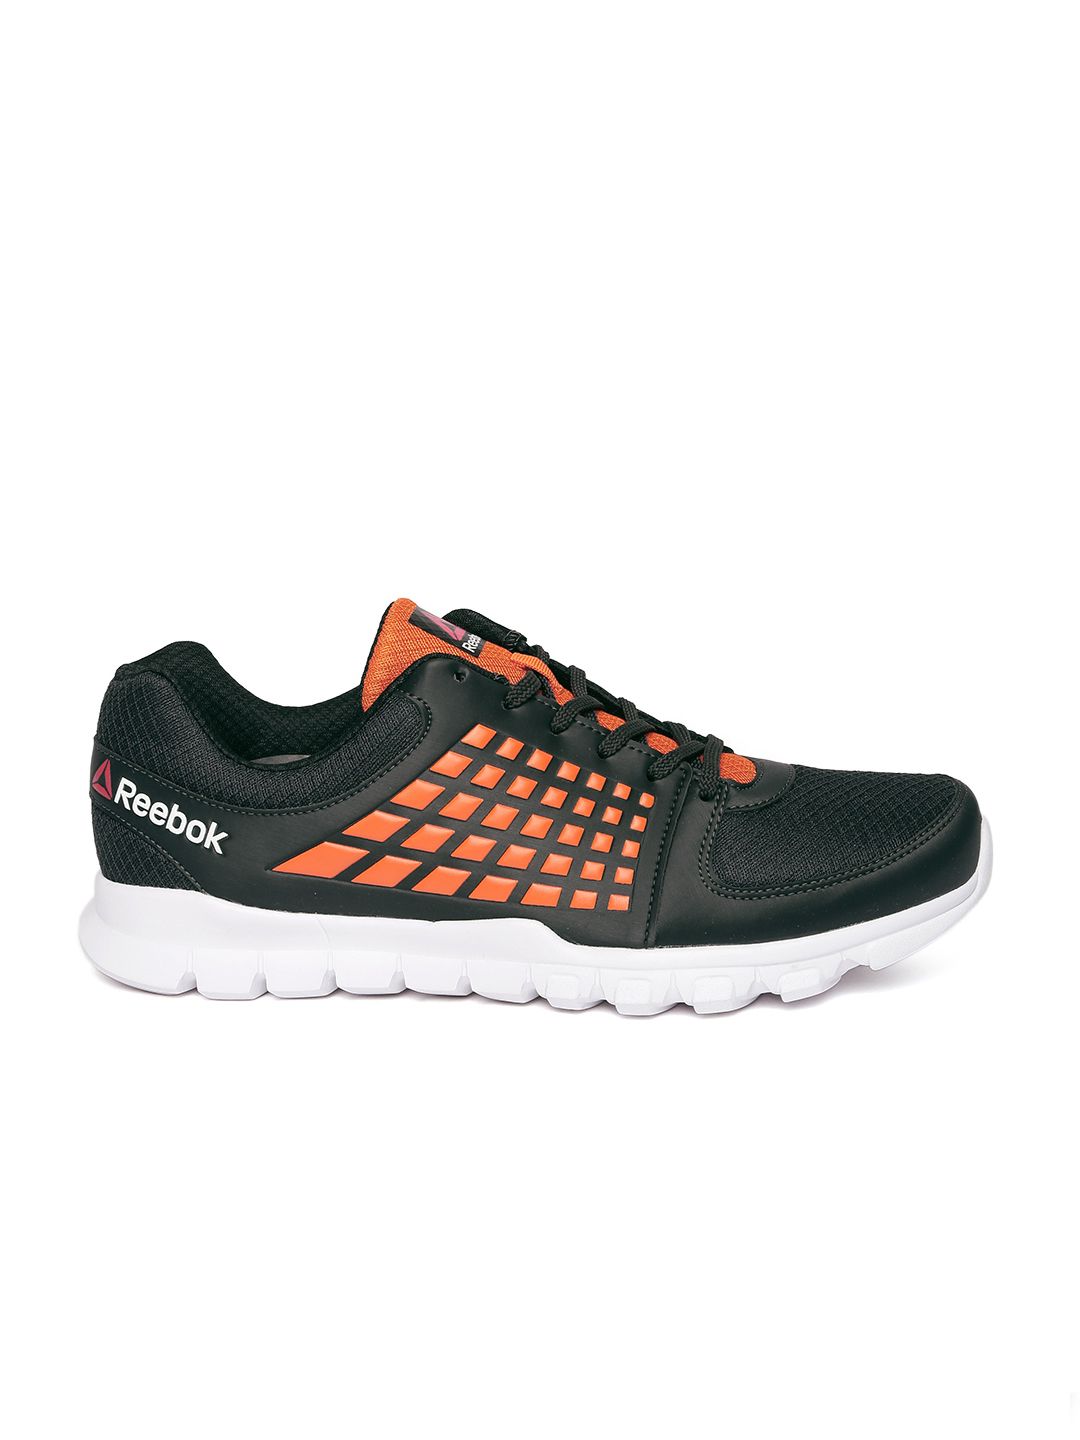 reebok sports shoes online sale